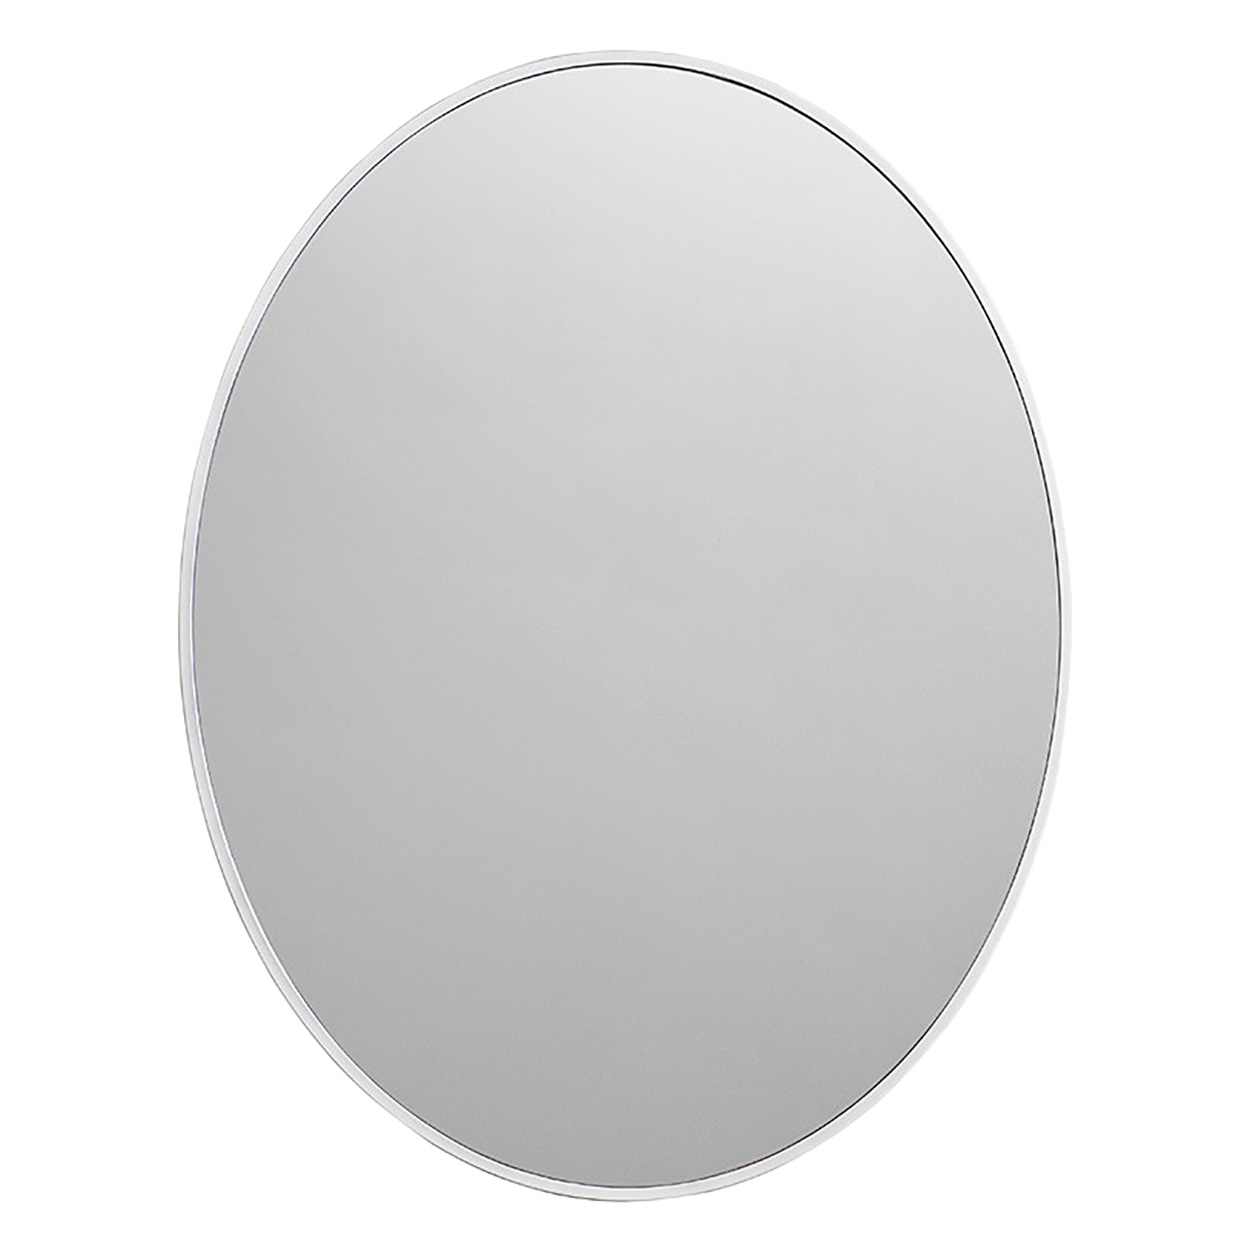 Зеркало для ванной Caprigo Контур М-379S-В134 зеркало для ванной caprigo контур м 379s 134